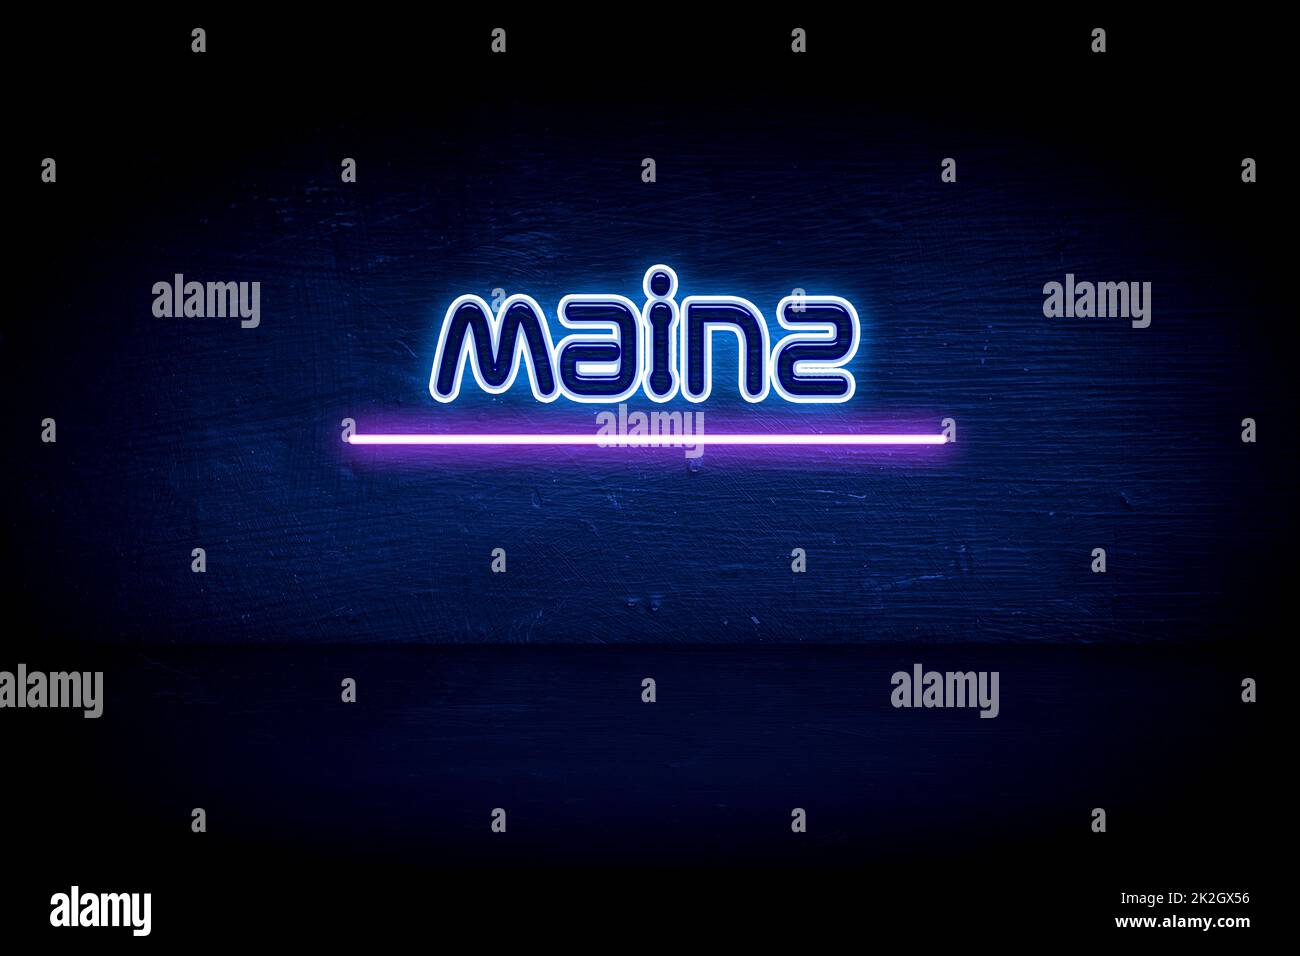 Mainz - panneau d'annonce au néon bleu Banque D'Images